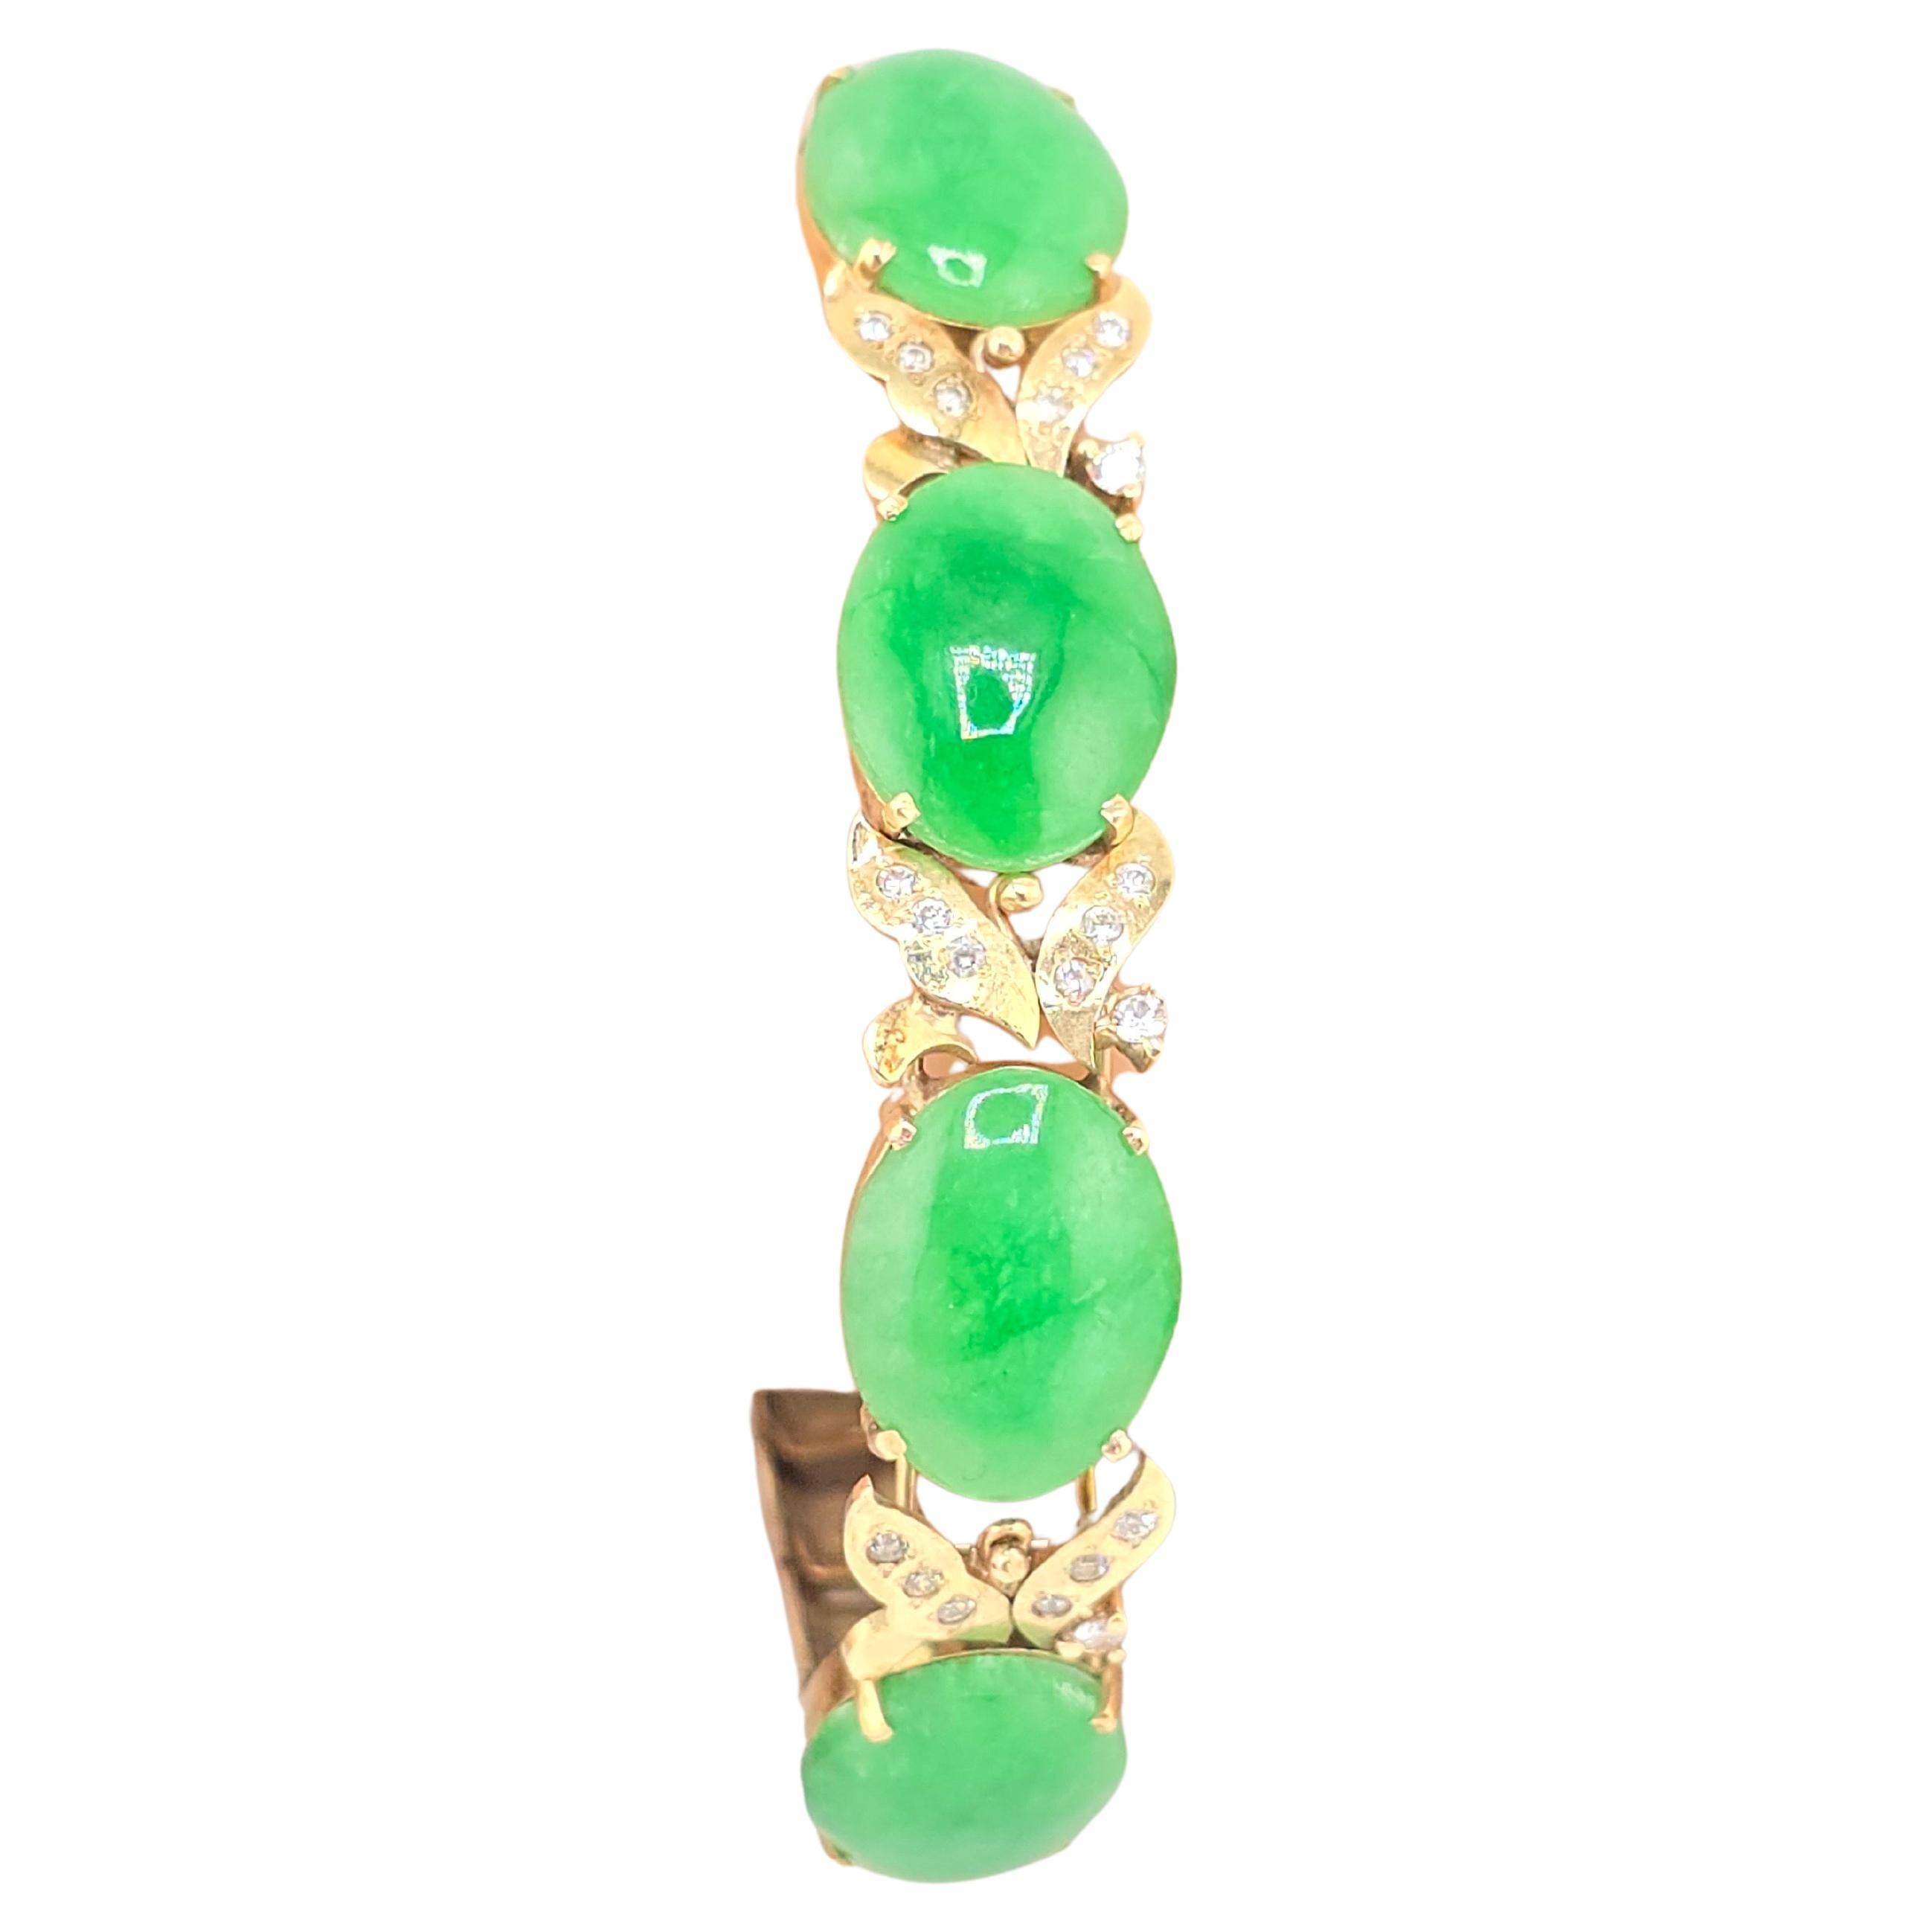 Dies ist ein wunderschönes Armband aus 14 Karat Gelbgold mit Diamanten und grünem Jadeit. Die Farbe des Jades ist extrem leuchtend wie ein Waldgrün. Jeder Stein hat leicht über 3 Karat. Es gibt viele Diamanten in jedem Abschnitt neben der Jade